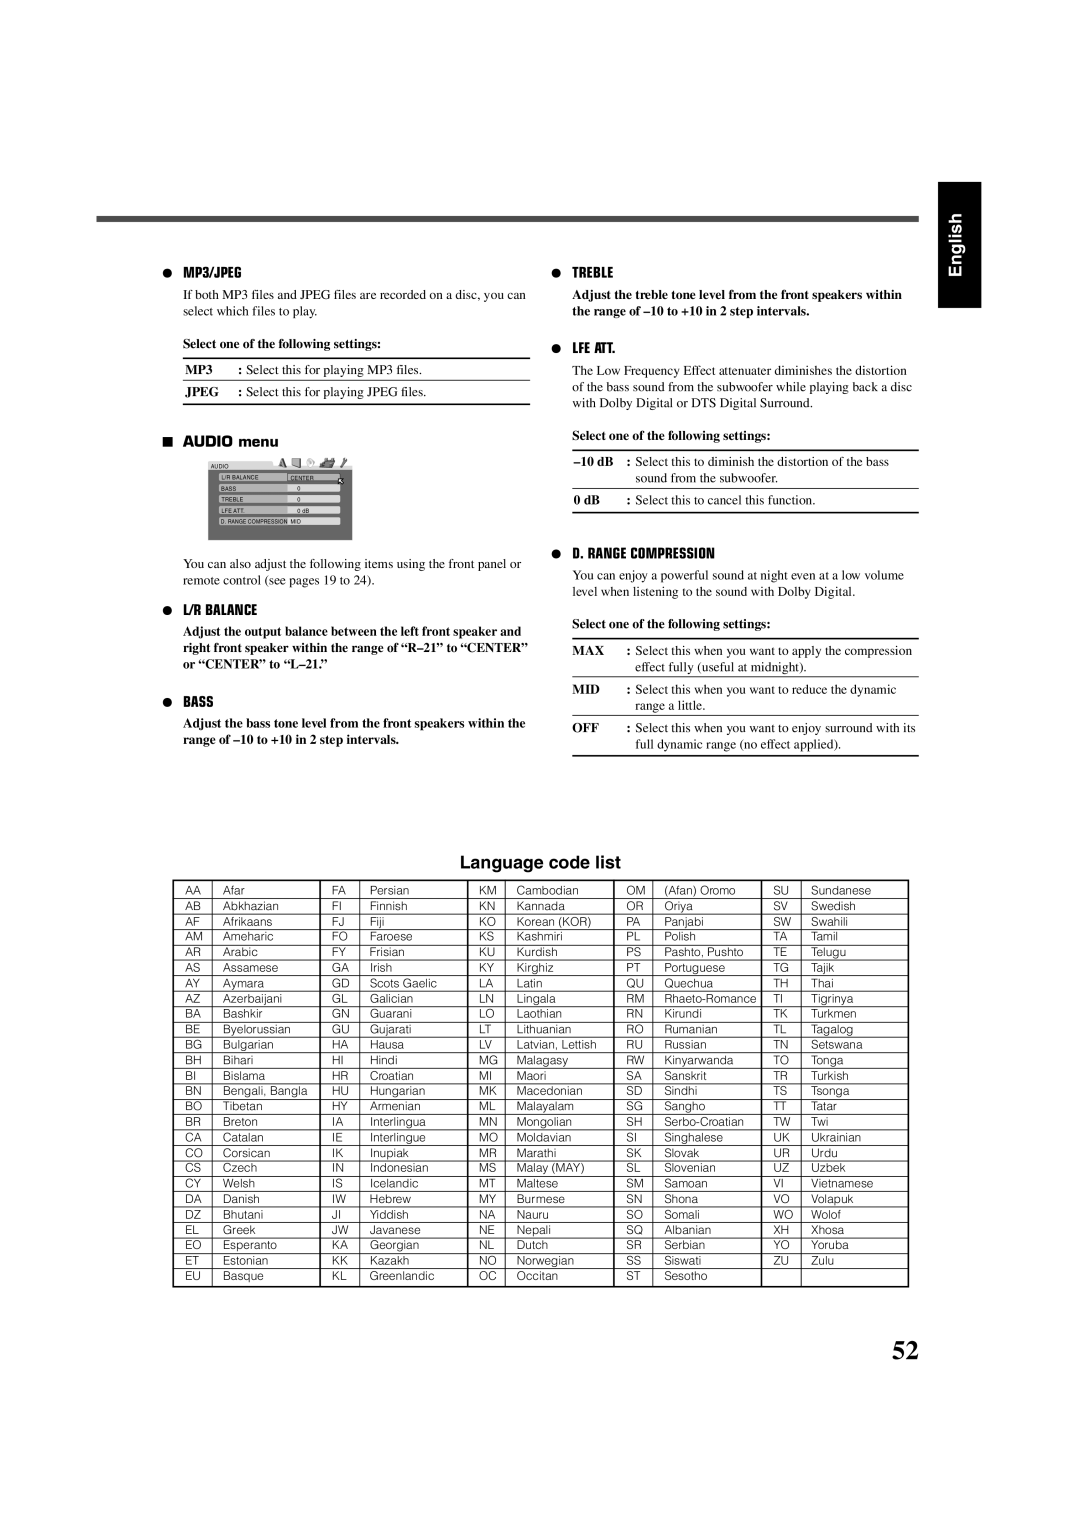 JVC RX-DV5SL Language code list, English, ¶MP3/JPEG, 7AUDIO menu, ¶L/R Balance, ¶Bass, ¶Treble, ¶Lfe Att, Jpeg, 10dB, 0 dB 